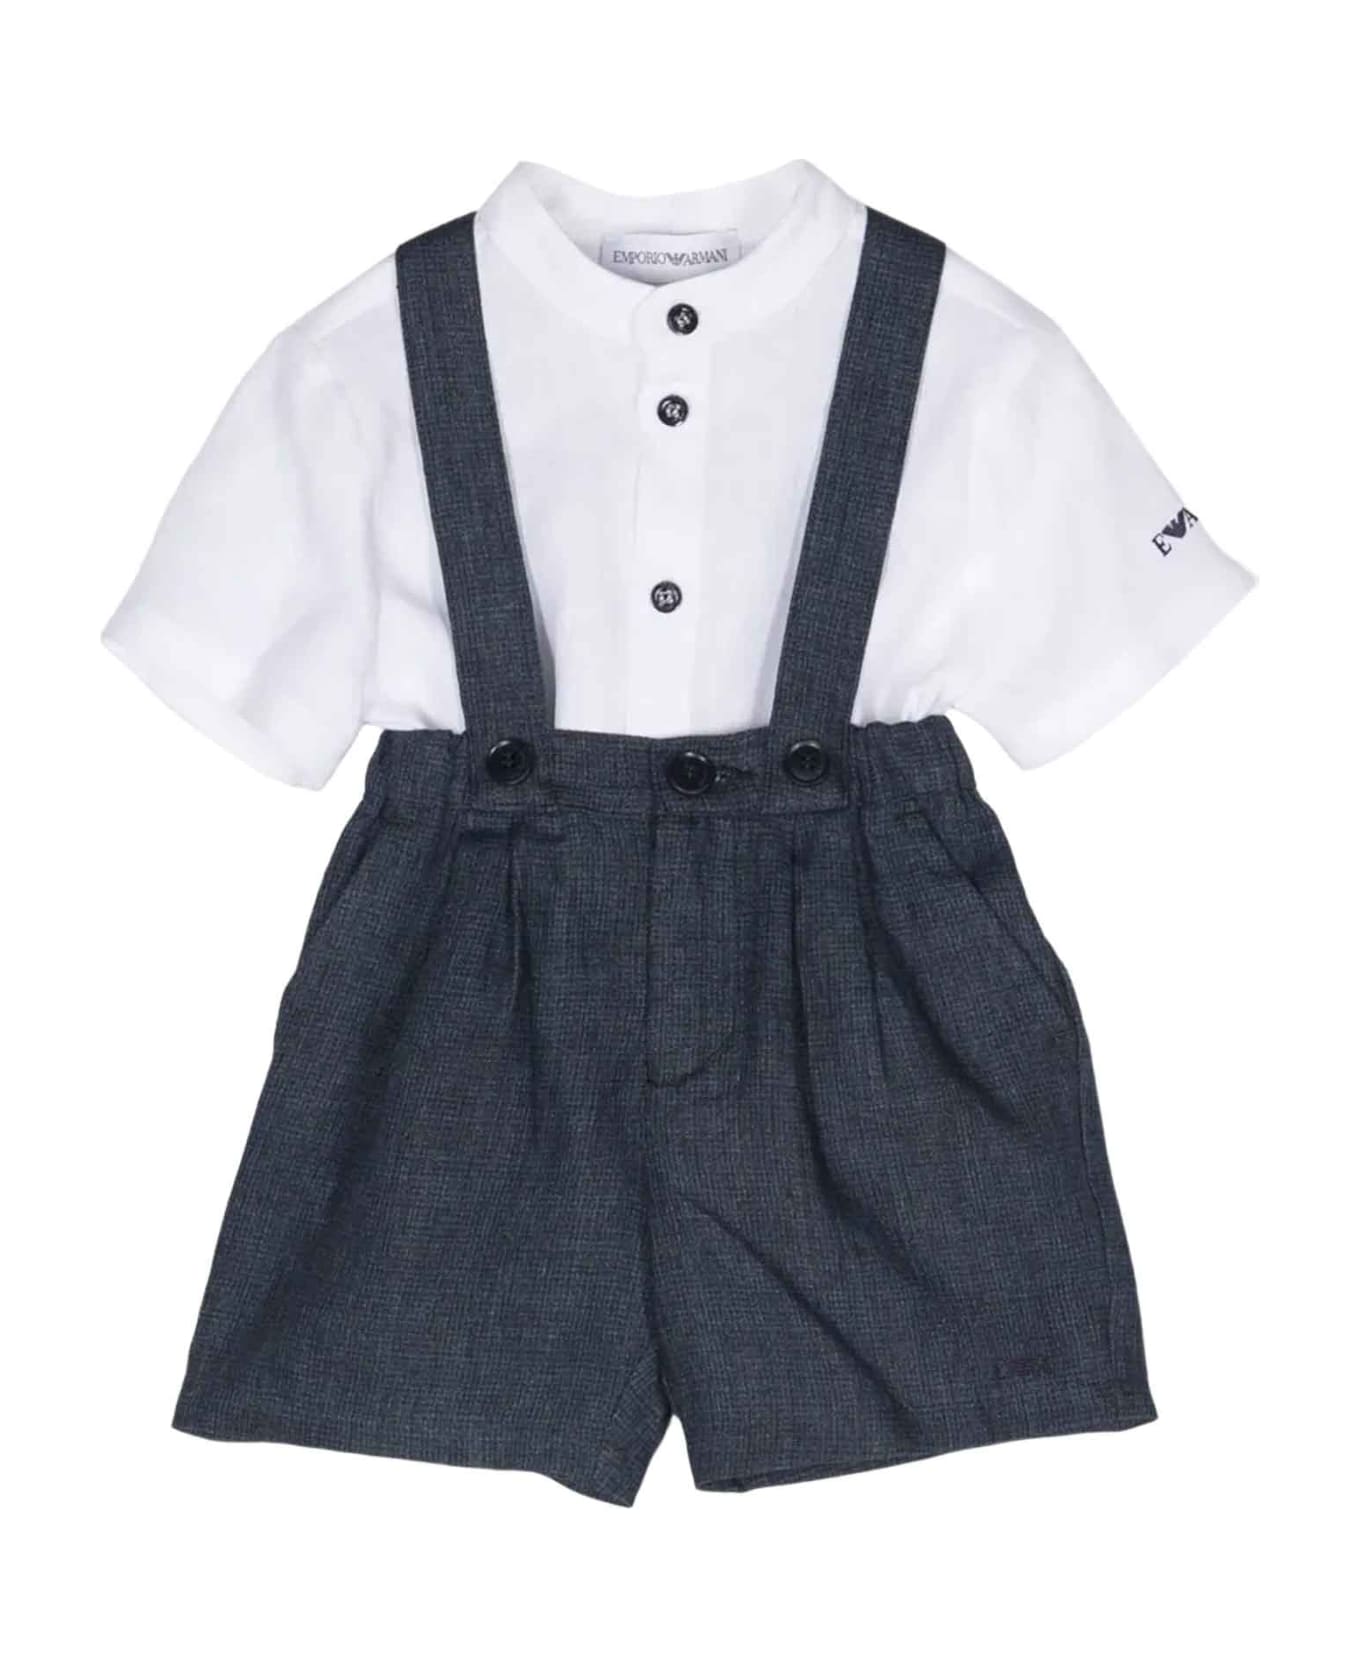 Emporio Armani Blue Shorts Set Baby Boy - Fant.Blu